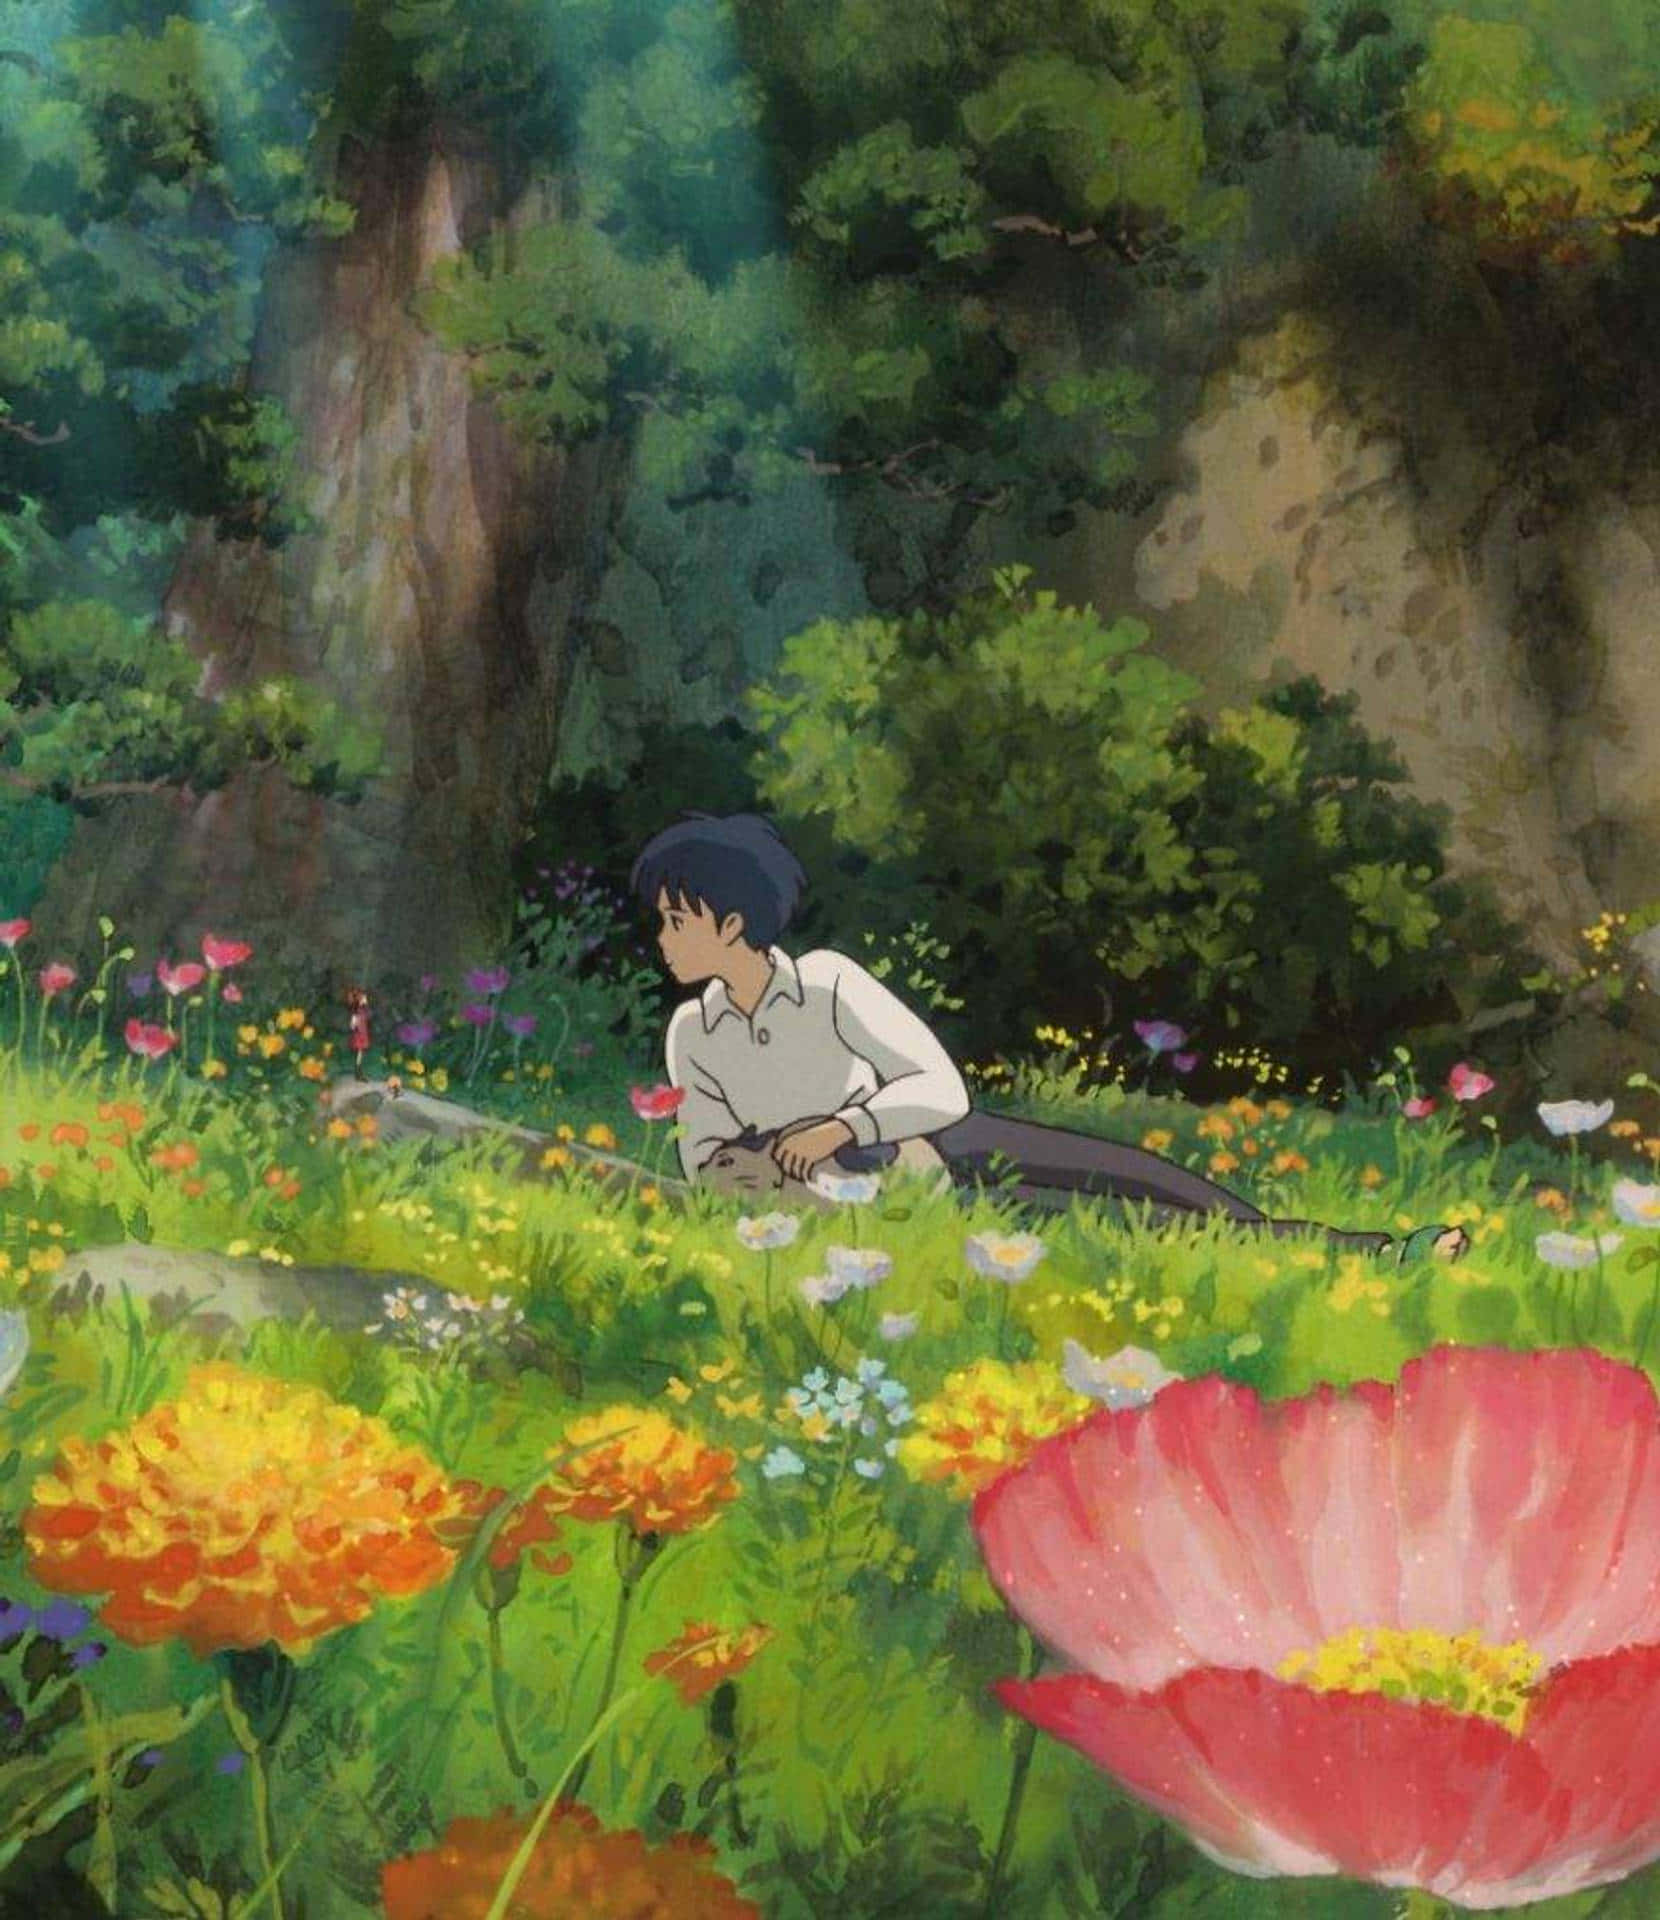 Ägen Bit Av Ghibli-världen Genom Att Ha Den Som Bakgrundsbild På Din Dator Eller Mobiltelefon. Wallpaper